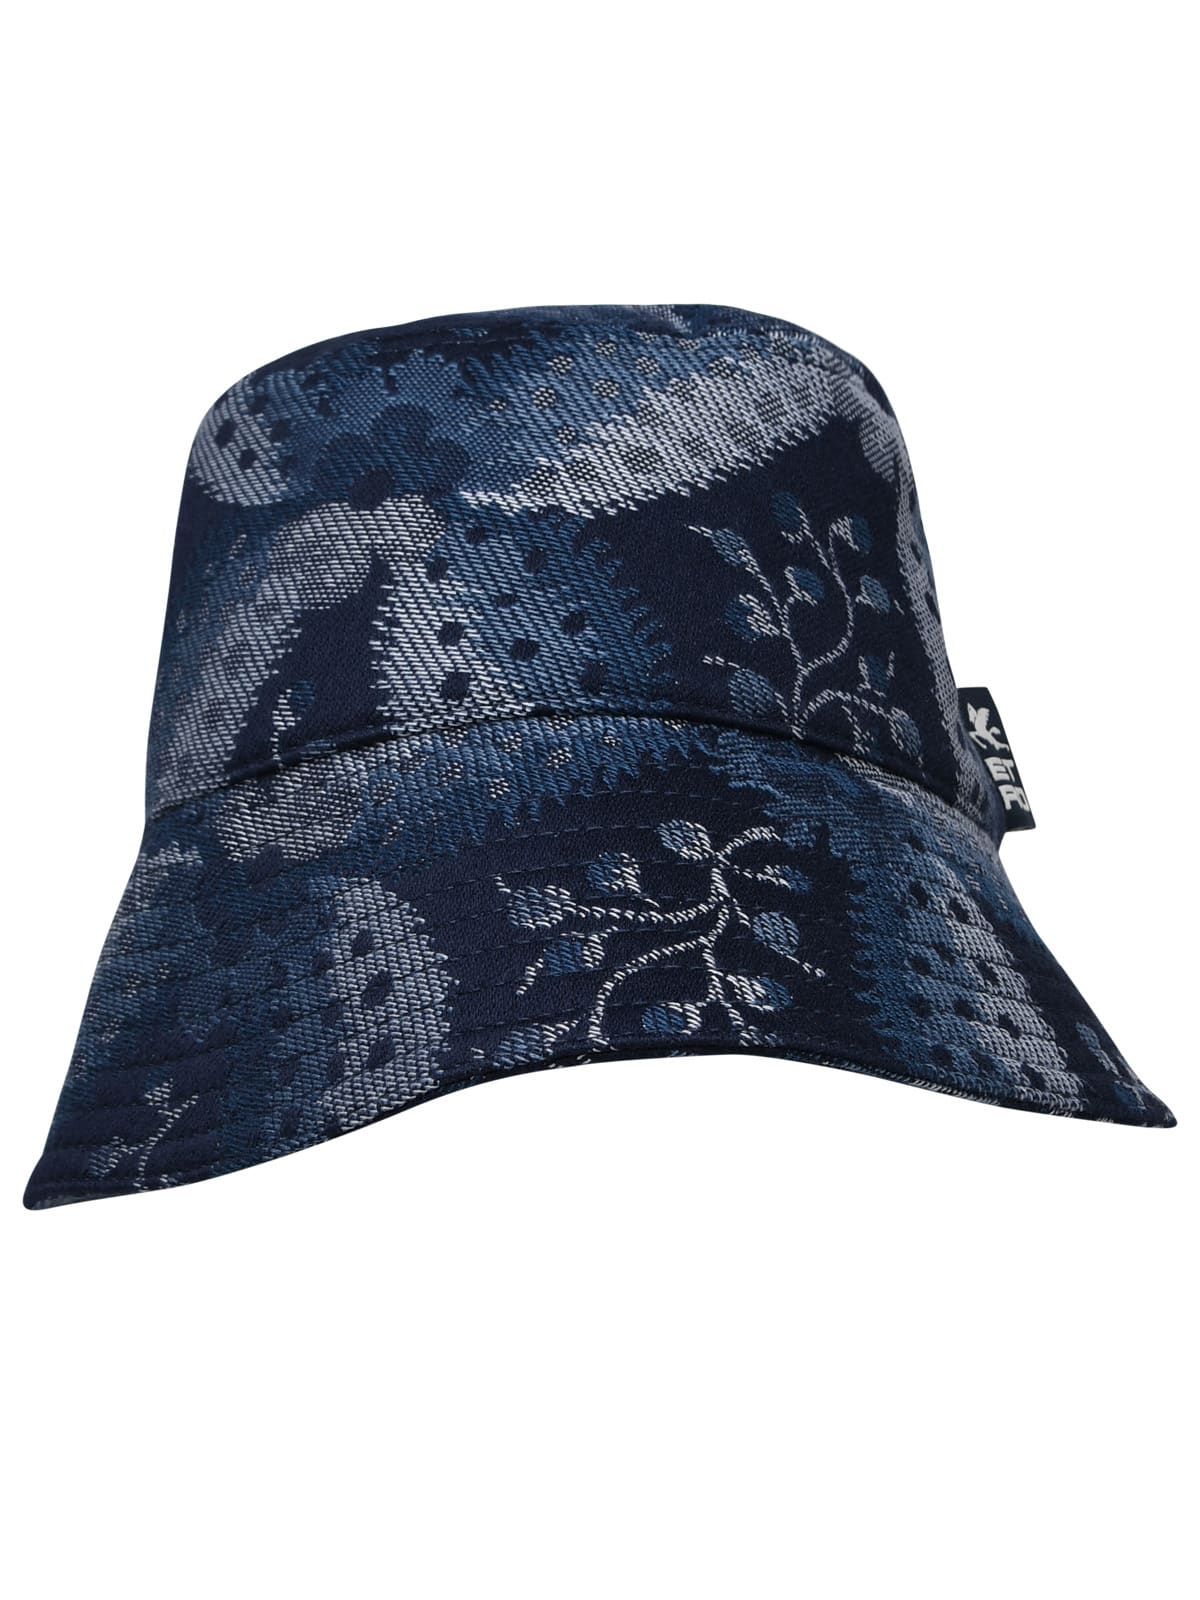 Etro Woman Blue Cotton Blend Hat